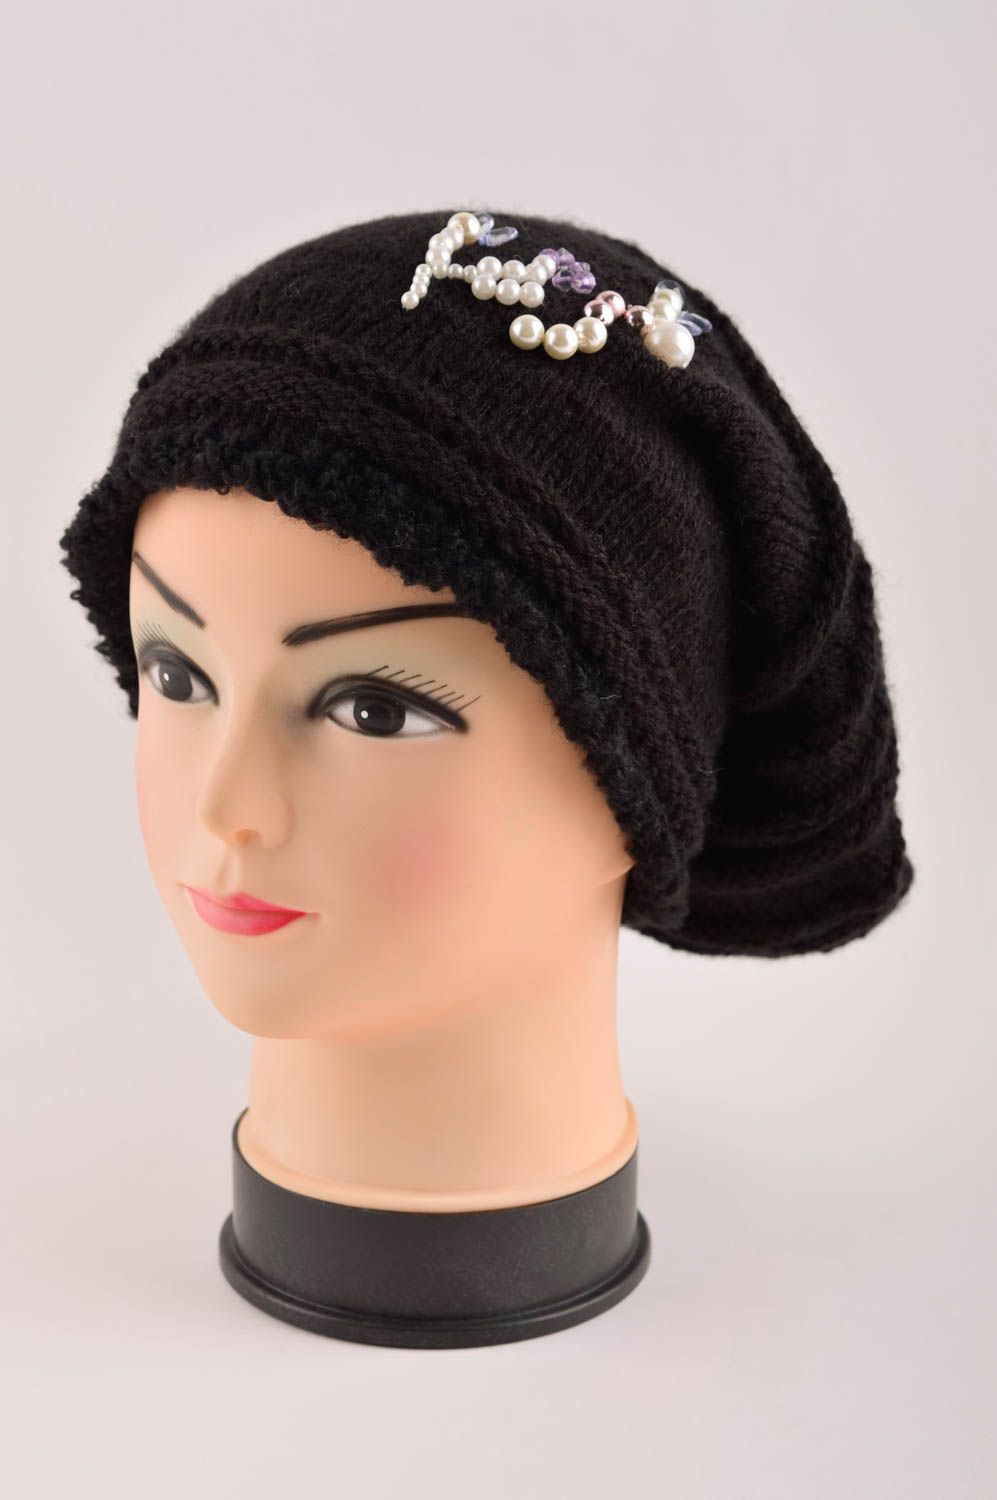 Handmade winter hat designer hat for girl unusual hat crocheted hats for girl photo 2